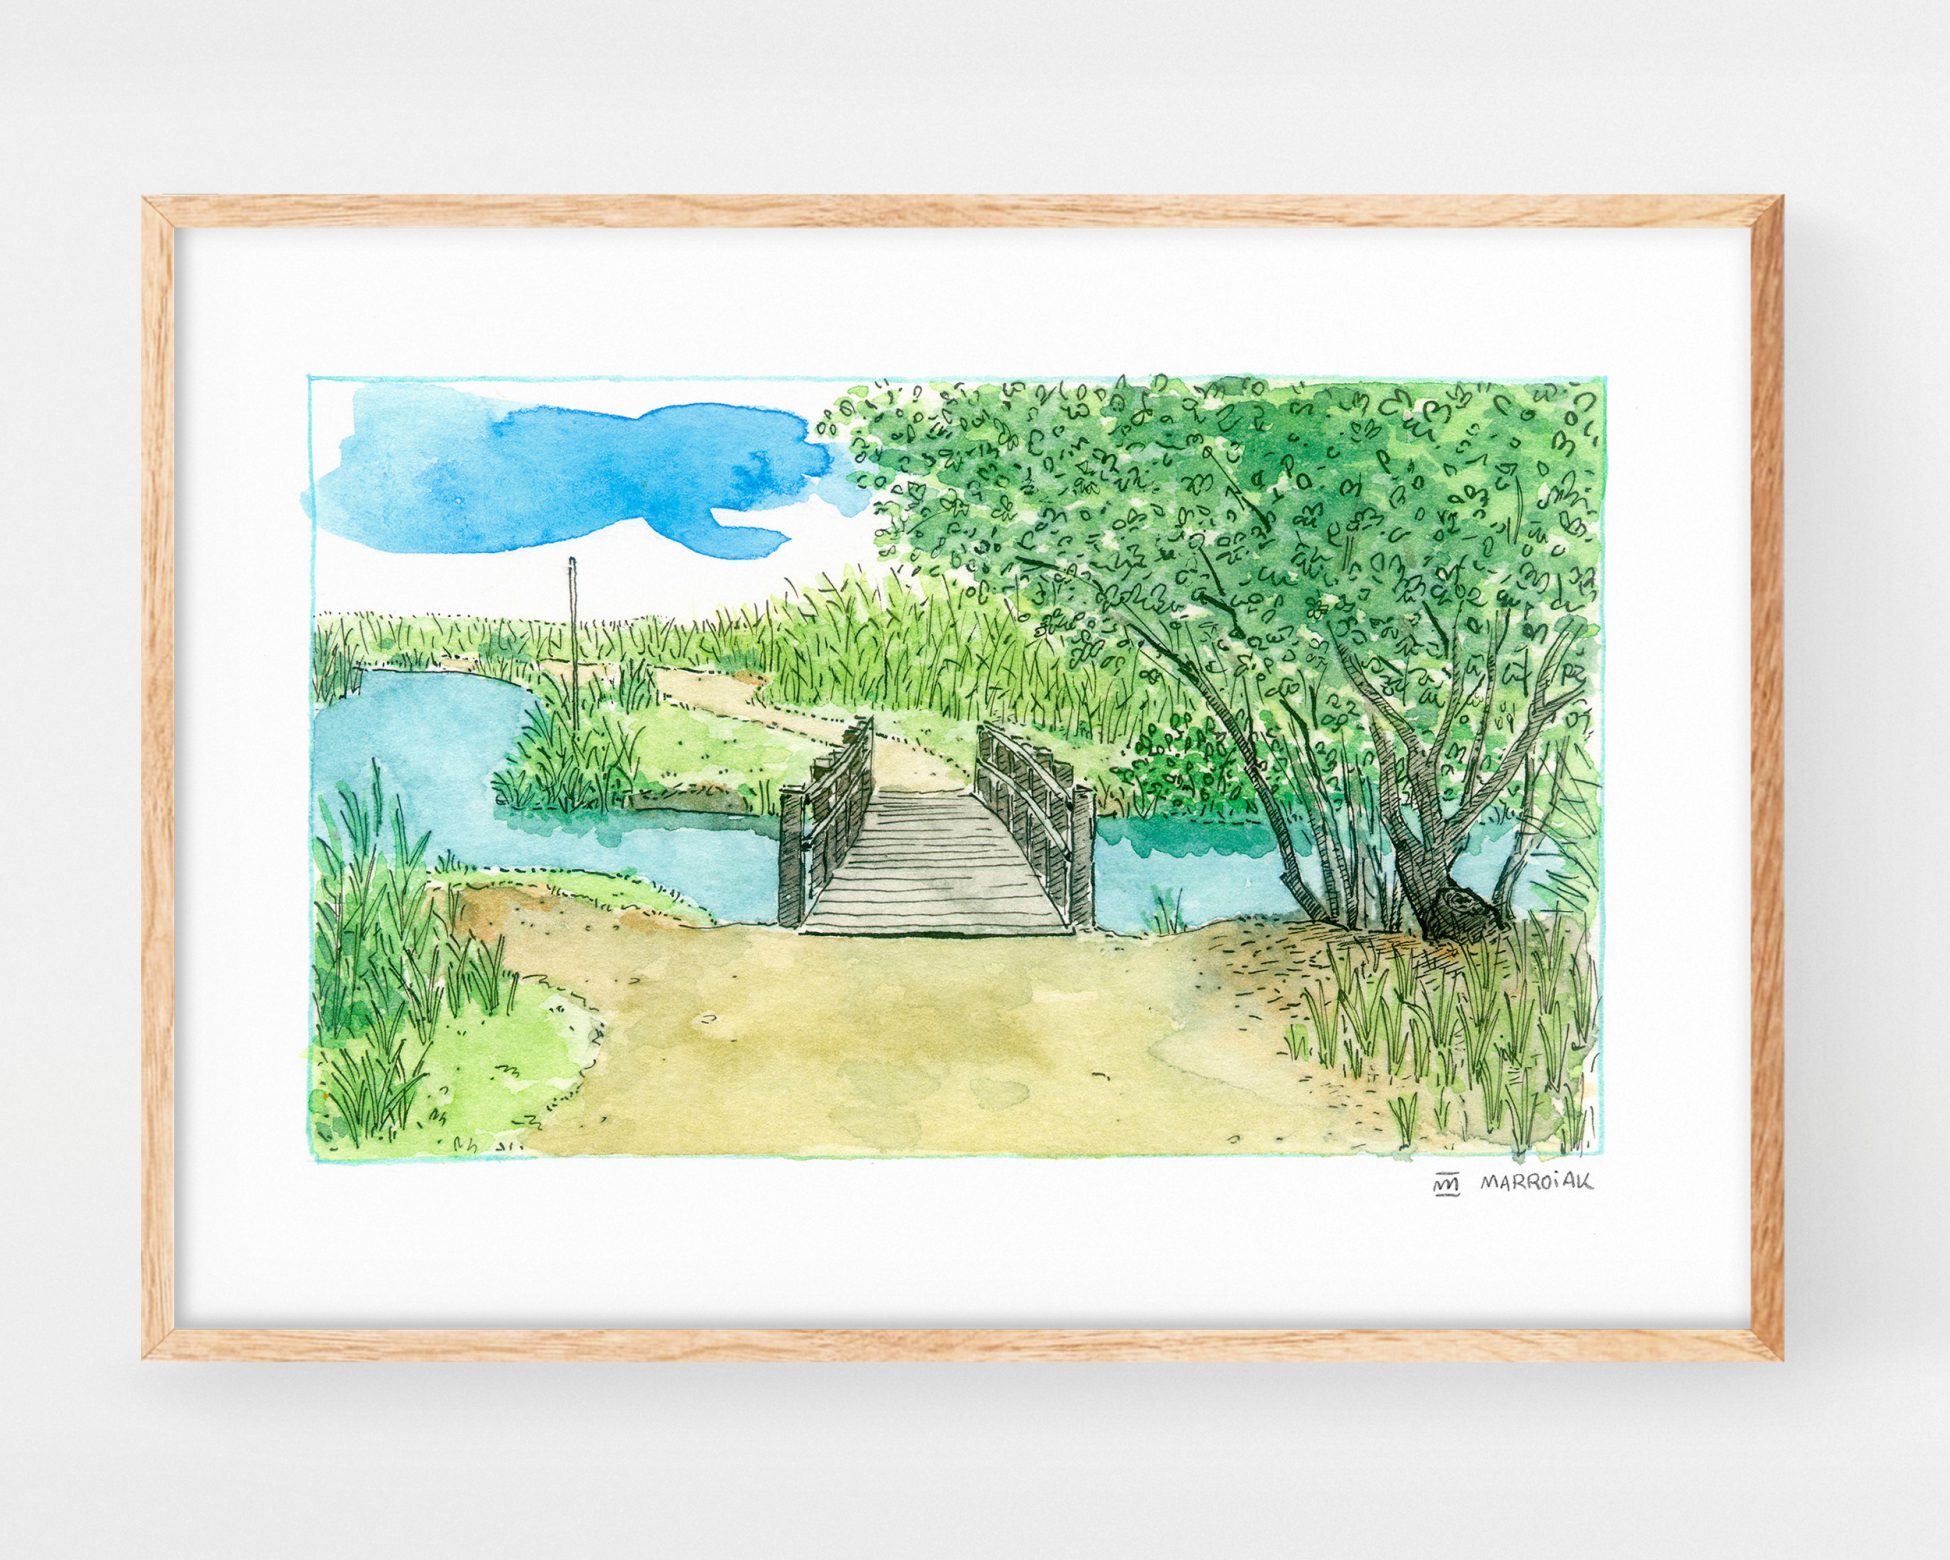 Cuadro decorativo de naturaleza con un dibujo en acuarela de un puente de madera junto a un árbol y un río en el Parque Natural de la Marjal Pego-Oliva. Dibujos y fotos de marjales y humedales de la Comunidad Valenciana.